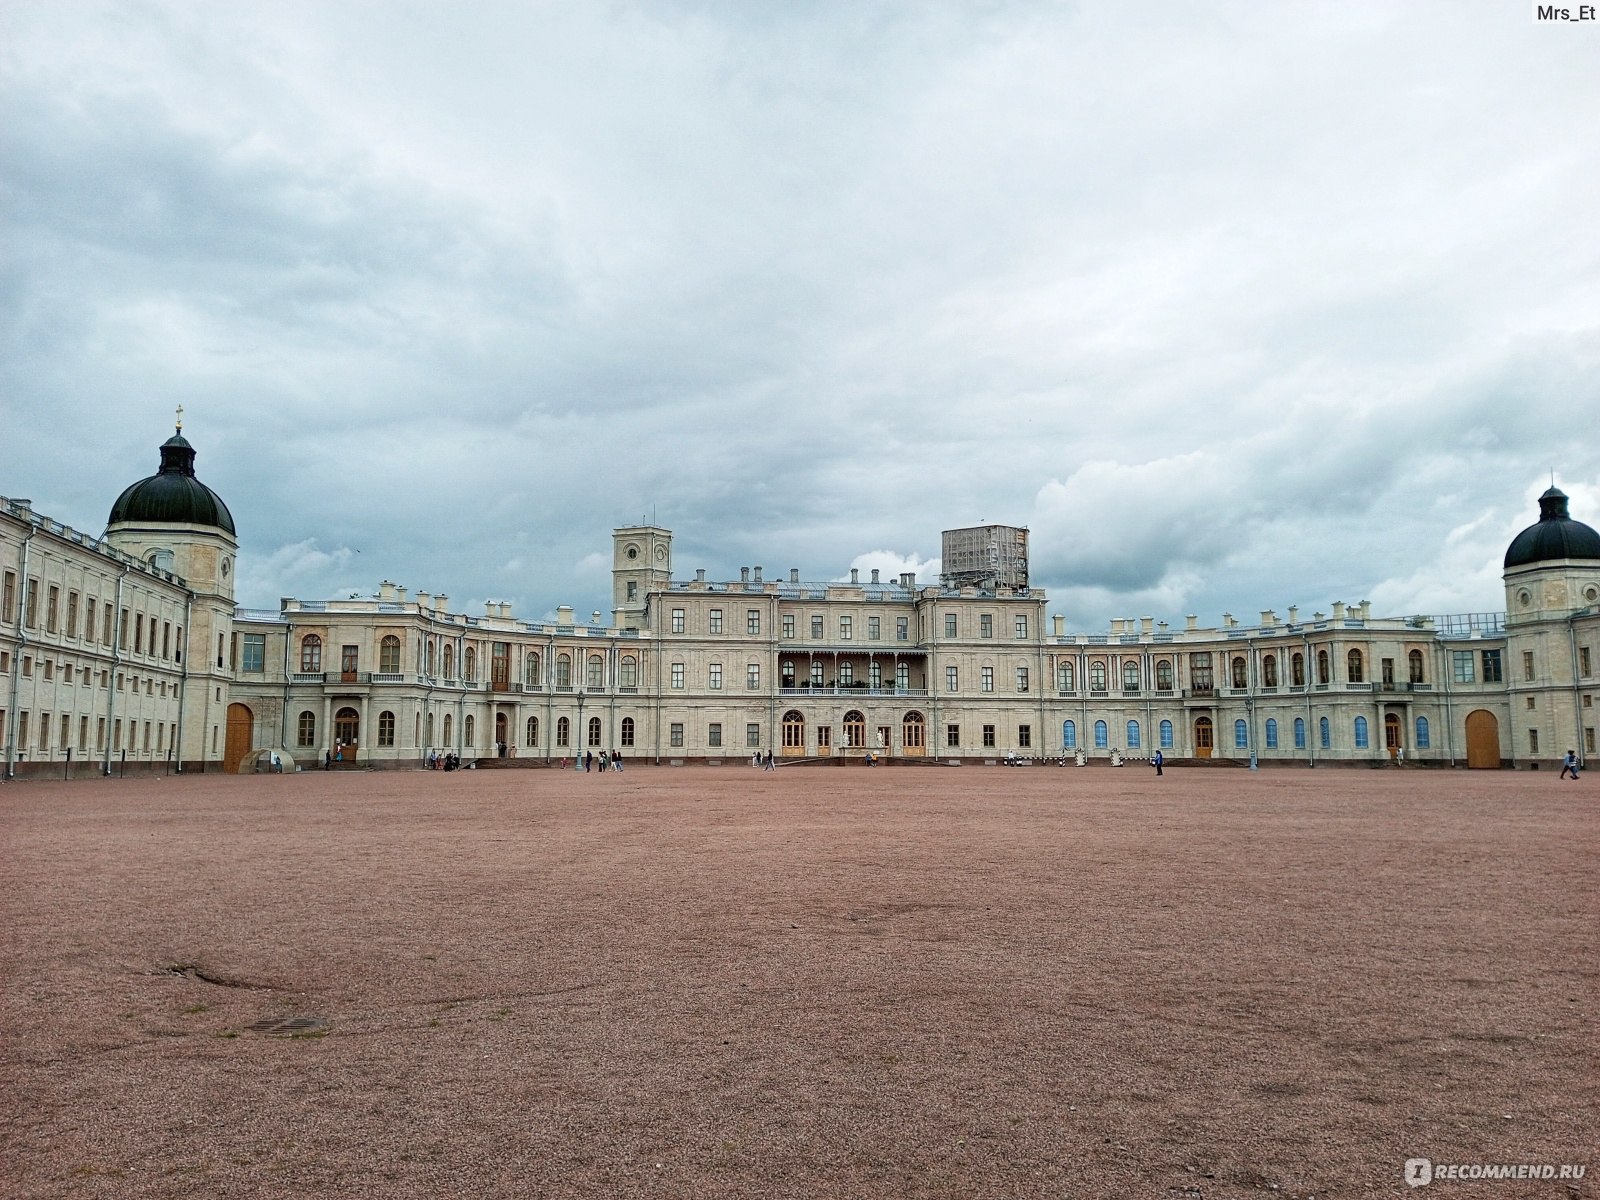 Анненский дворец в Ленинградской области